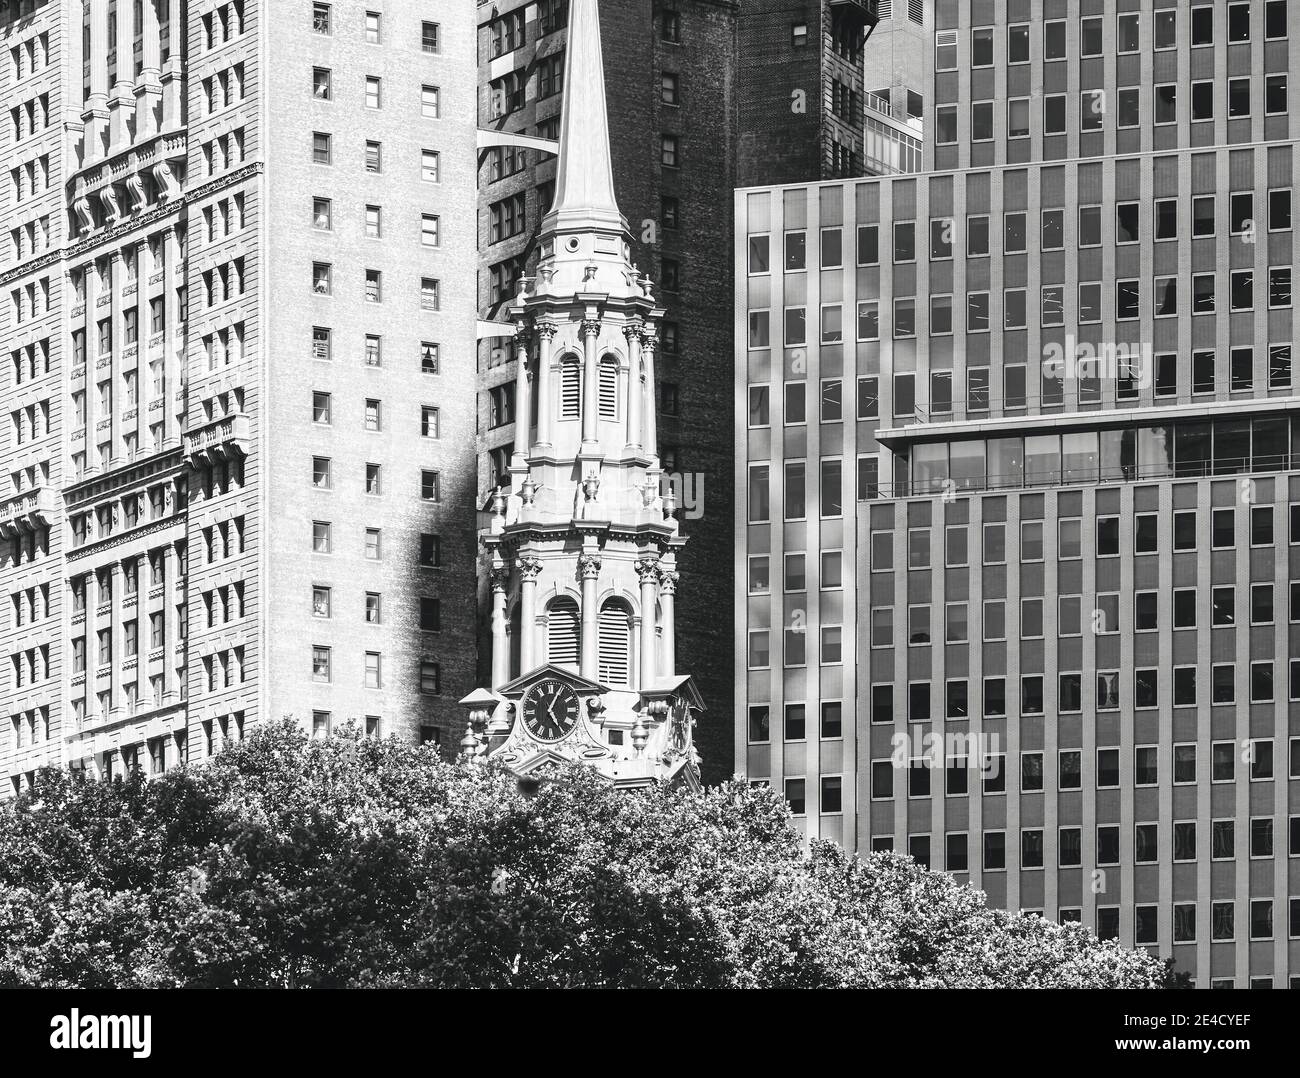 Photo noir et blanc de New York City, États-Unis d'architecture variée. Banque D'Images